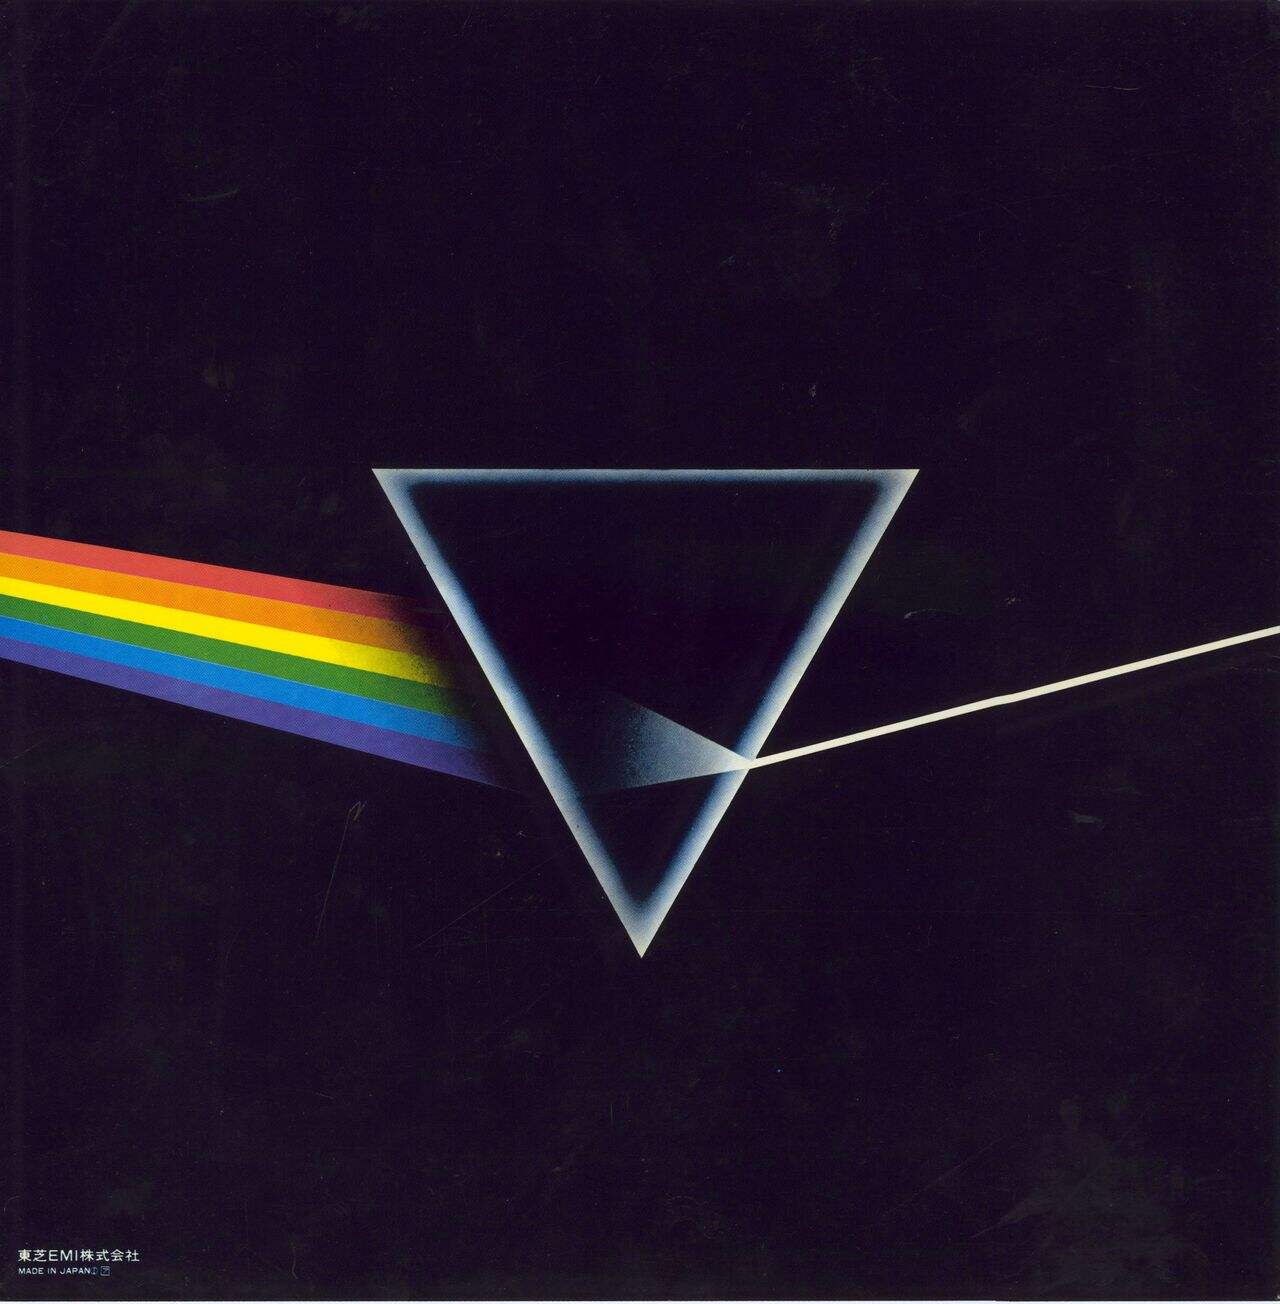 Pink Floyd The Dark Side Of The Moon - Complete Japanese Vinyl LP